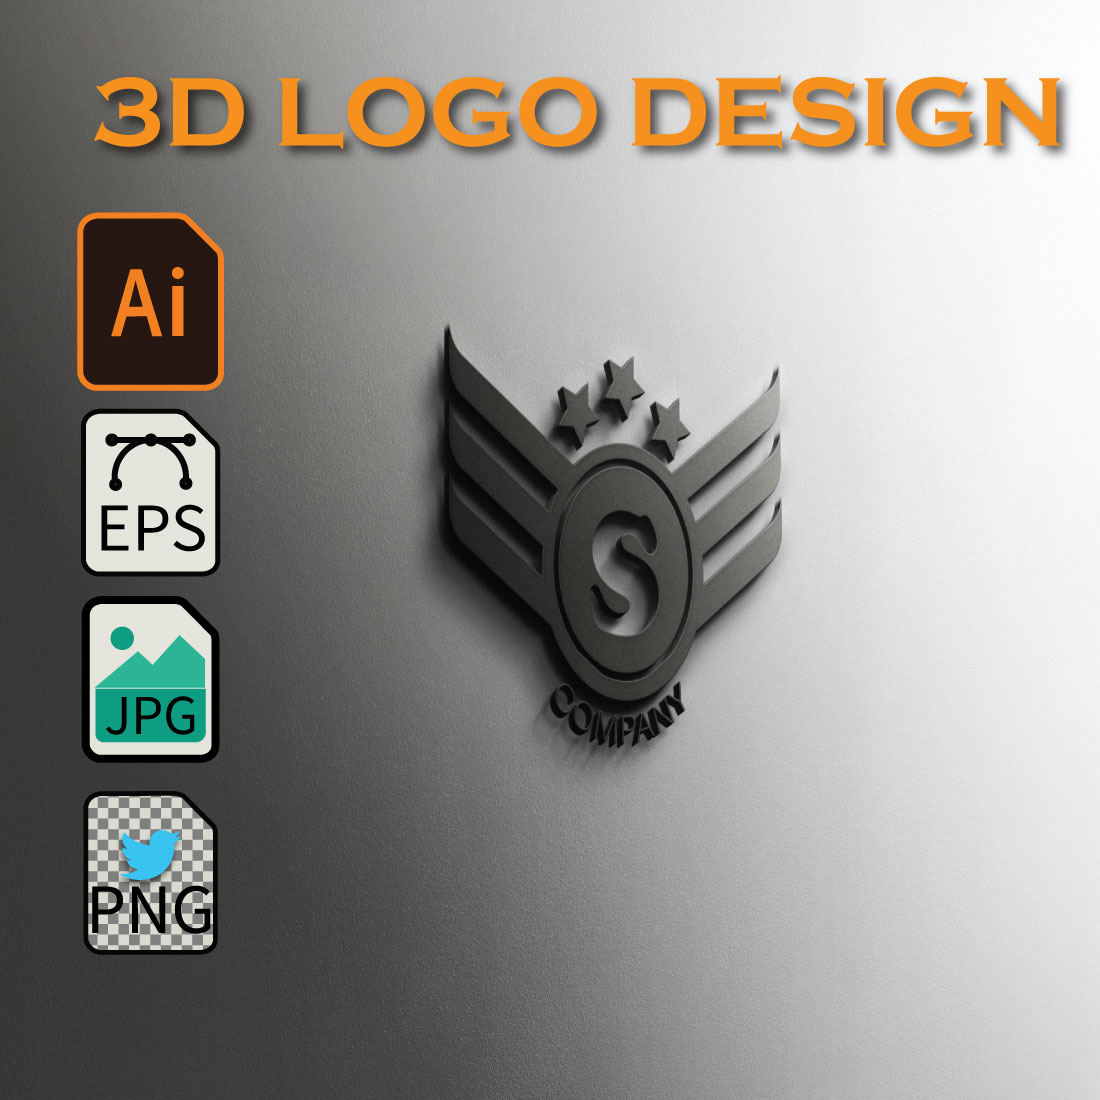 A 3d logo design for a company.